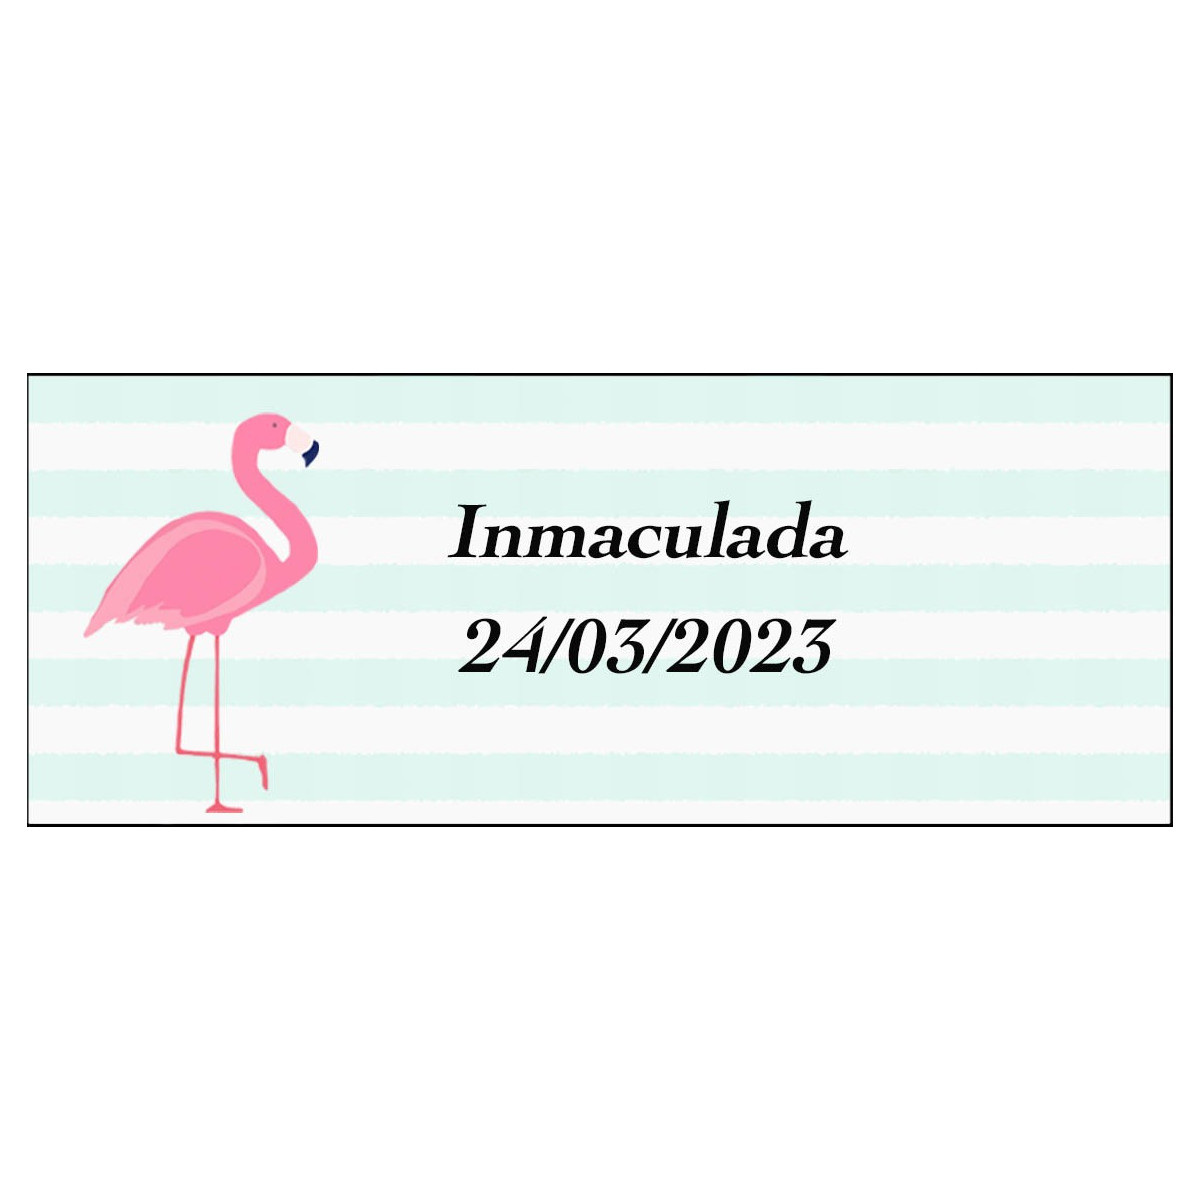 Adesivo de flamenco retangular personalizado para nome e data